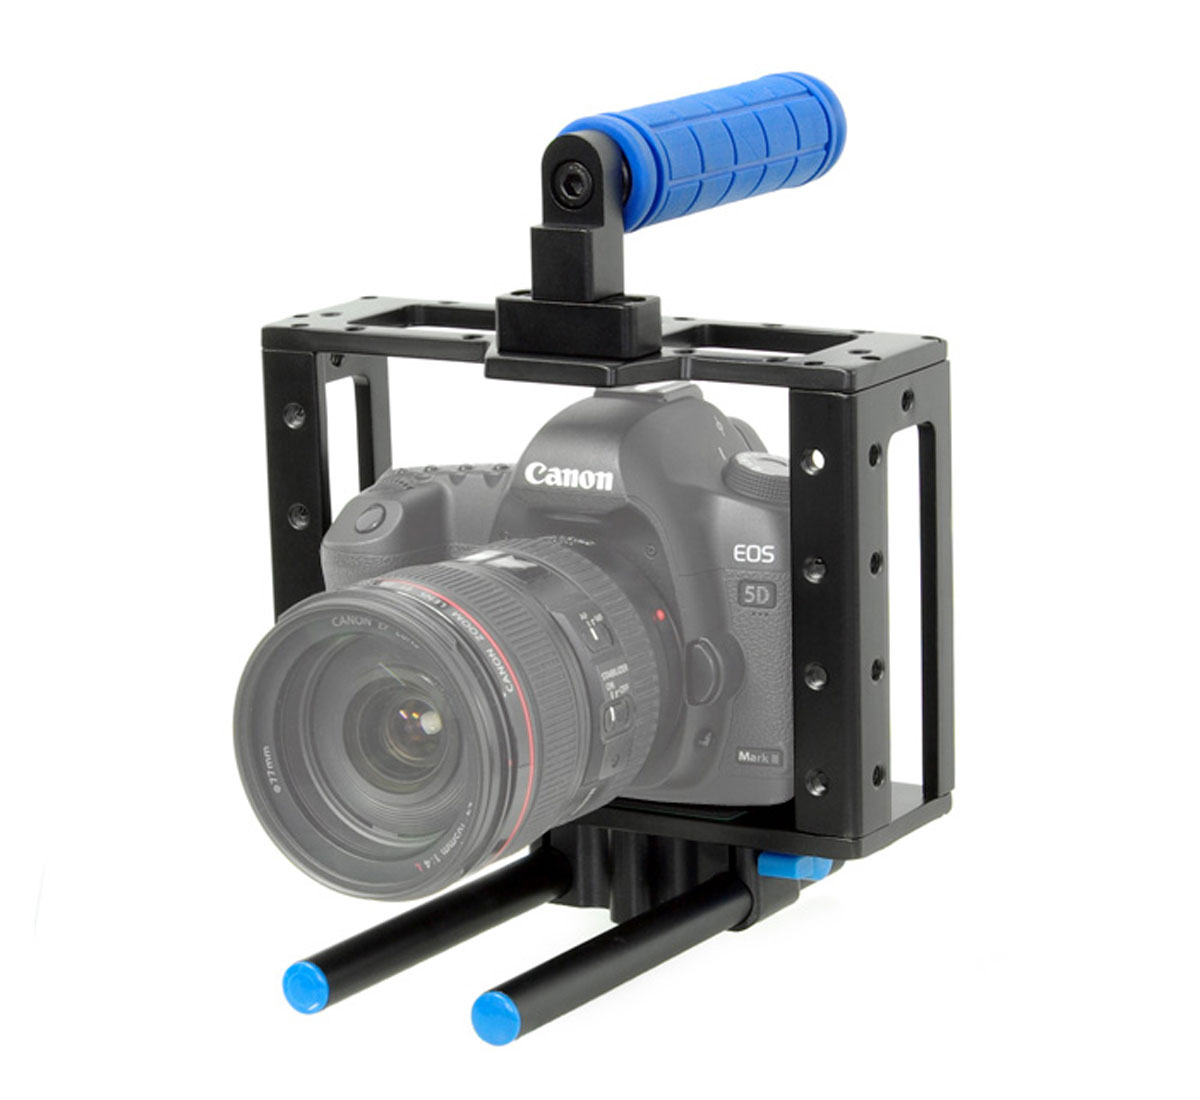 ayex Kamera Cage für DSLR Kameras wie z.B. Canon 5D Mark II, 7D